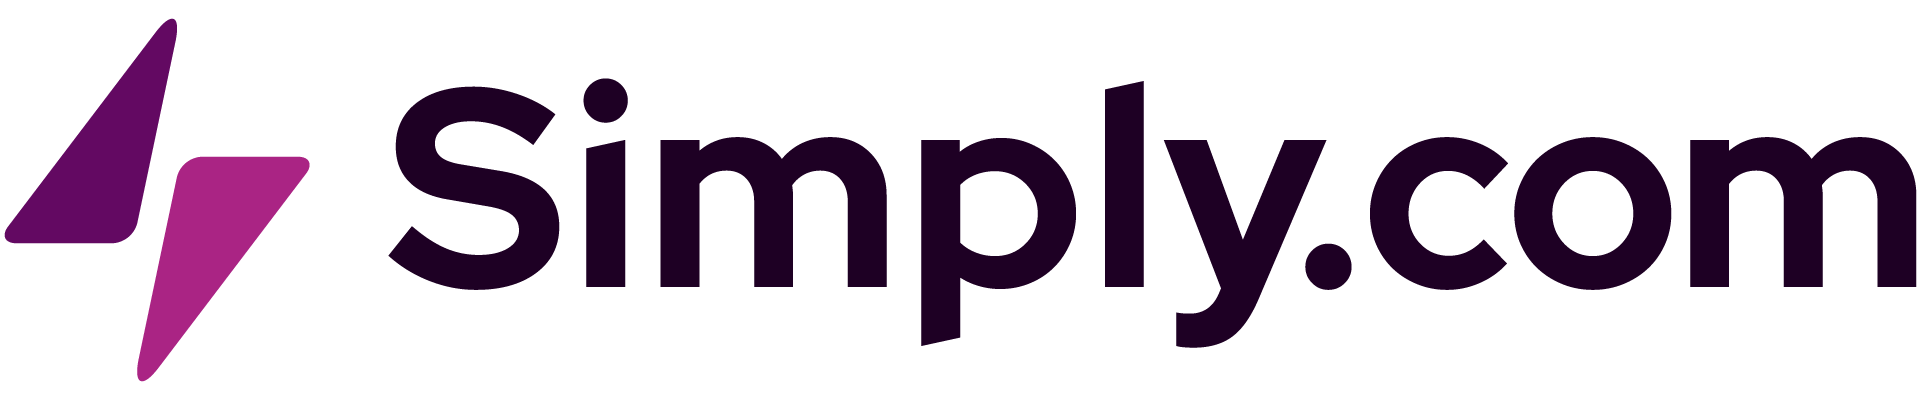 Simply.com logo